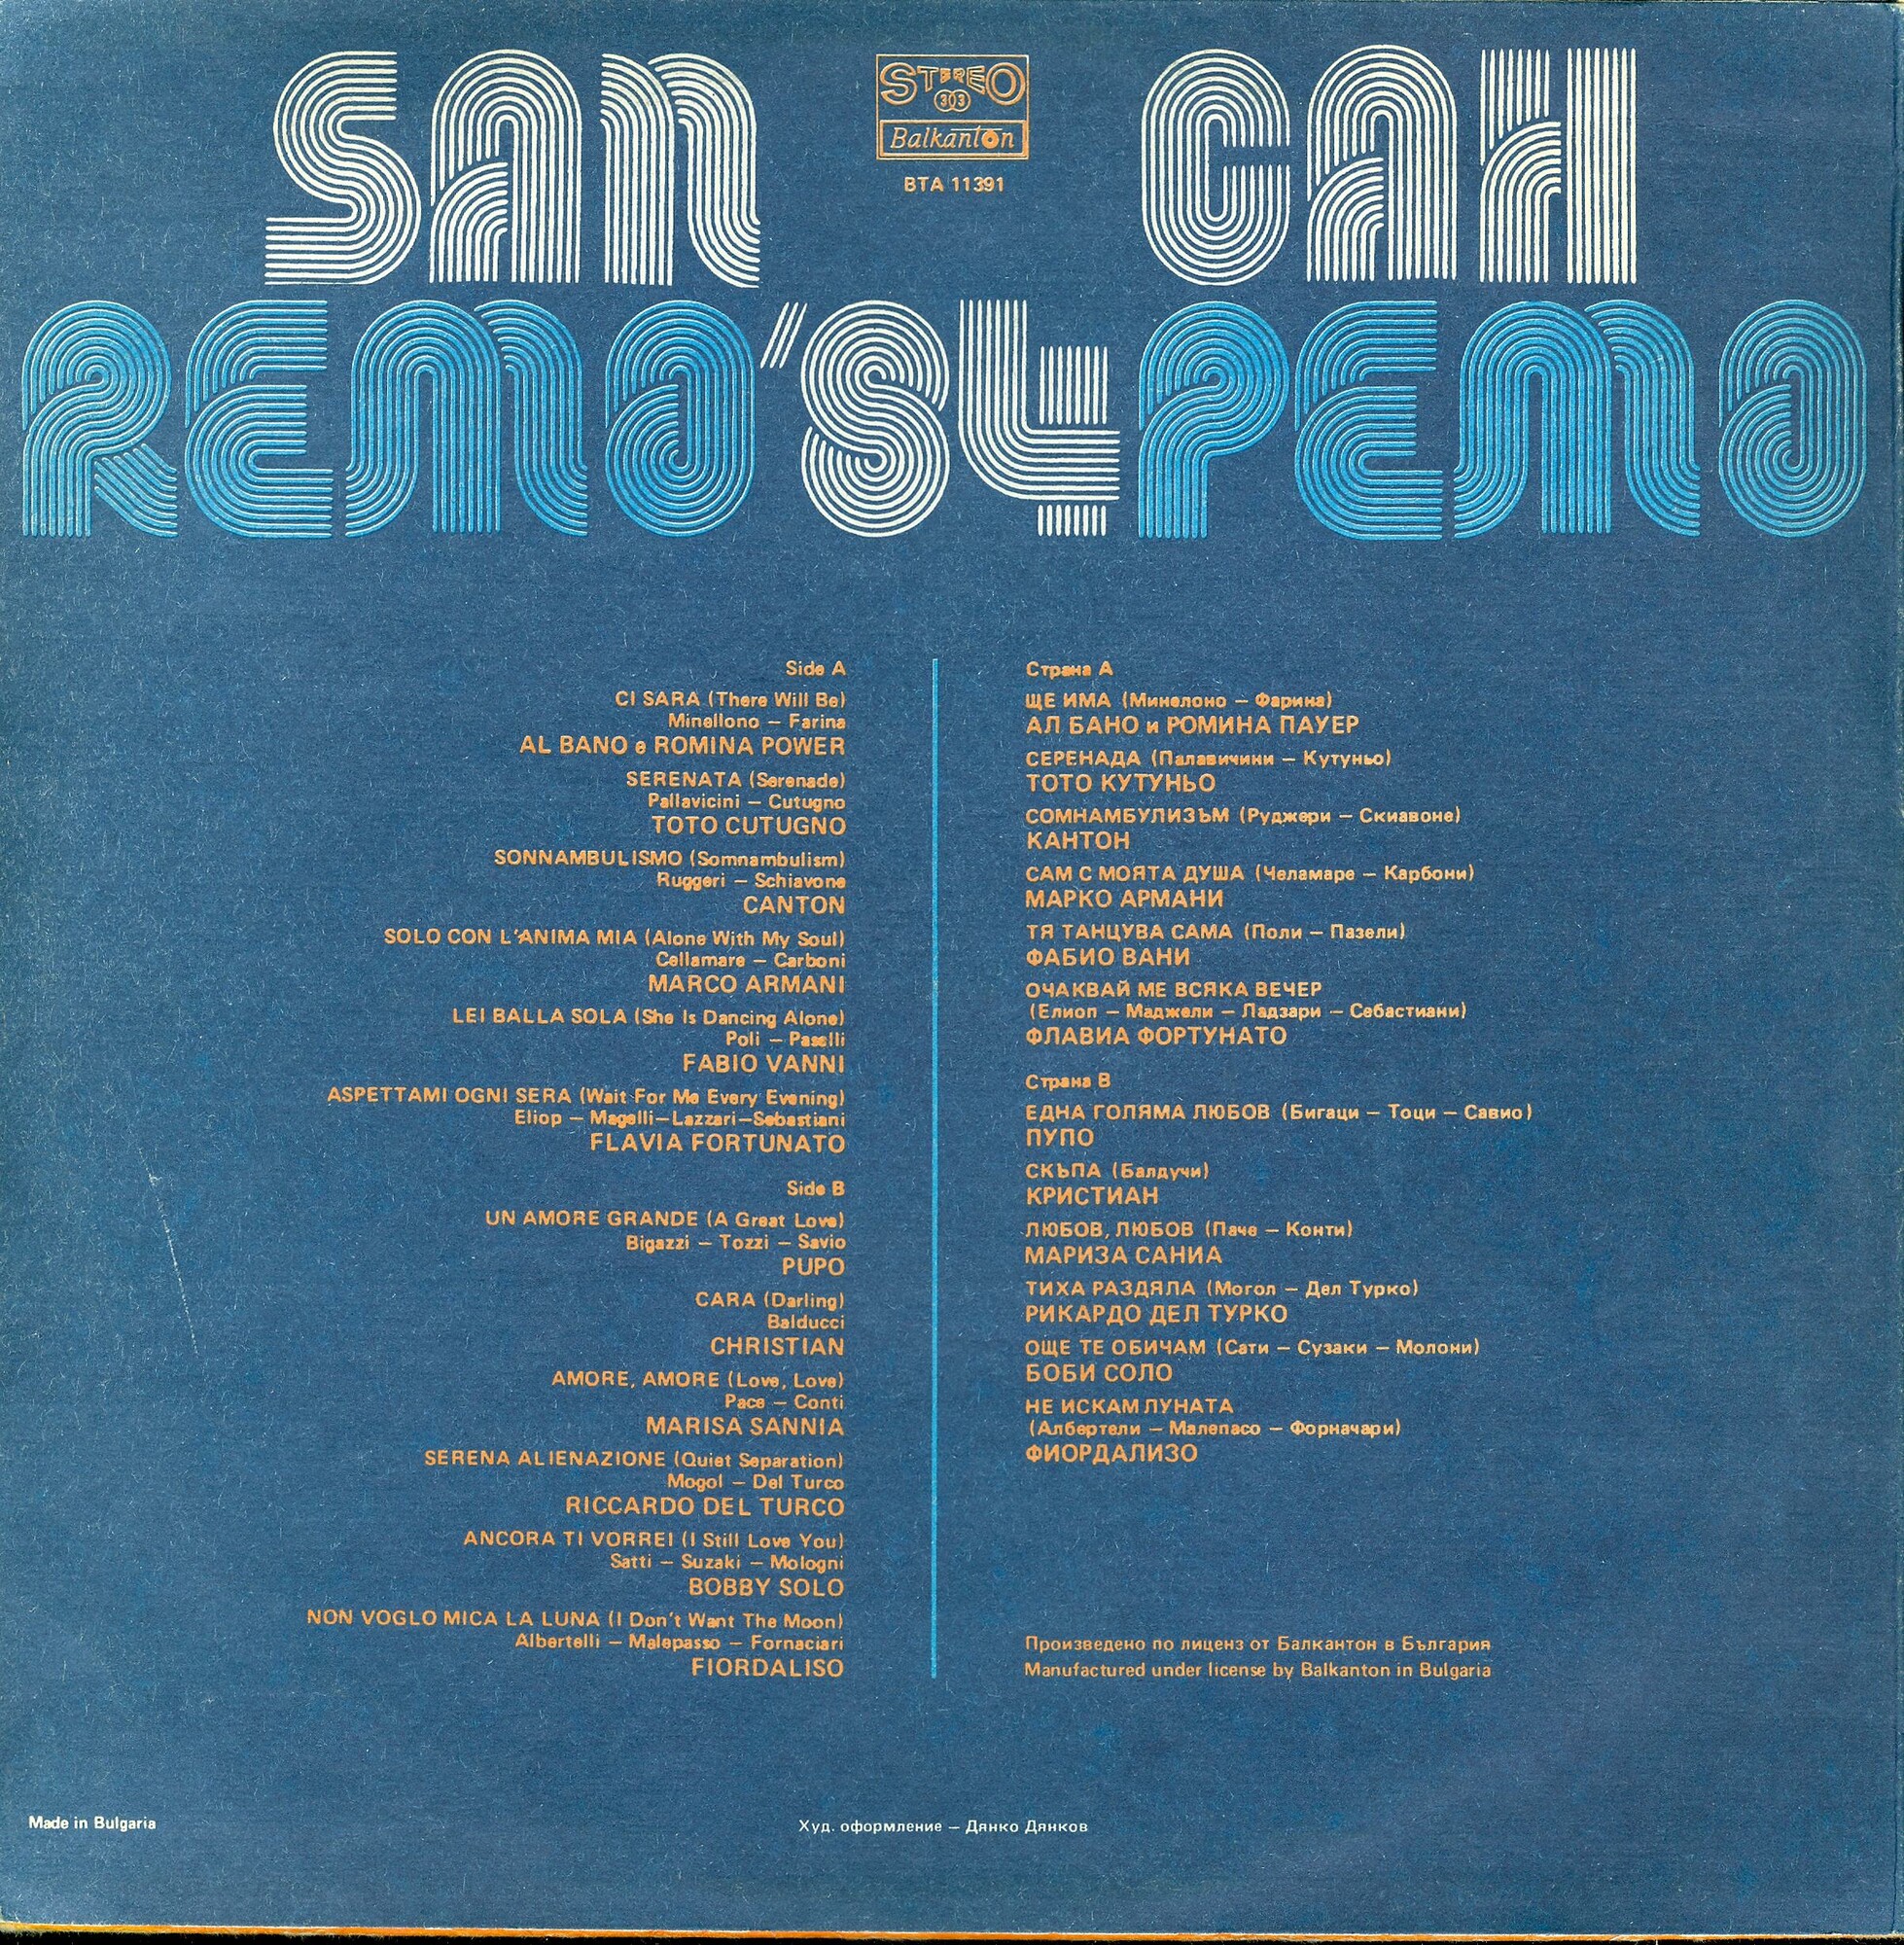 Сан Ремо '84